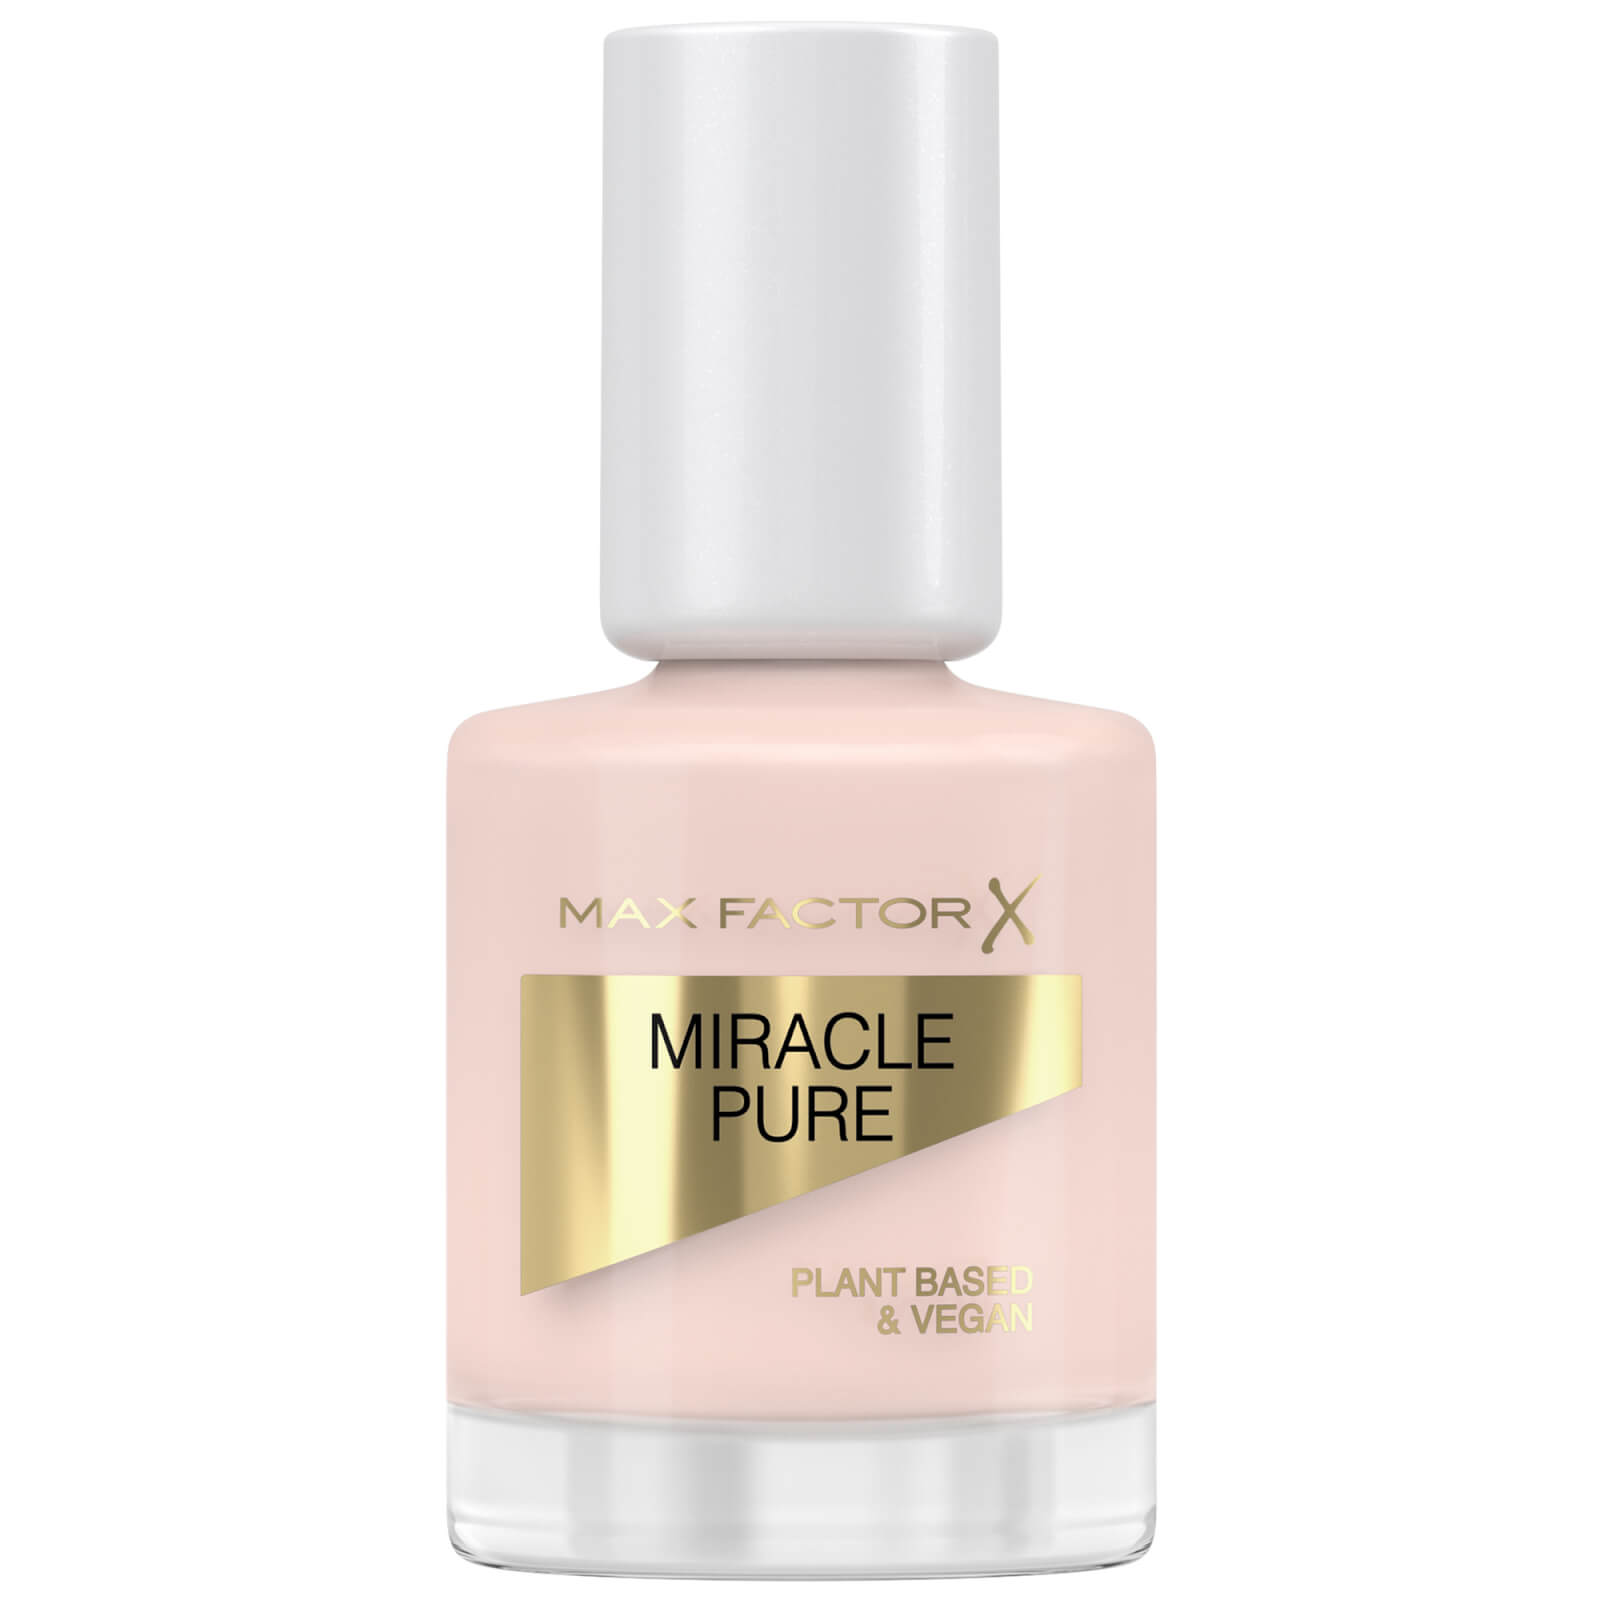 Max Factor Miracle Pure Nail Polish Lacquer 12ml (various Shades) - Nude Rose